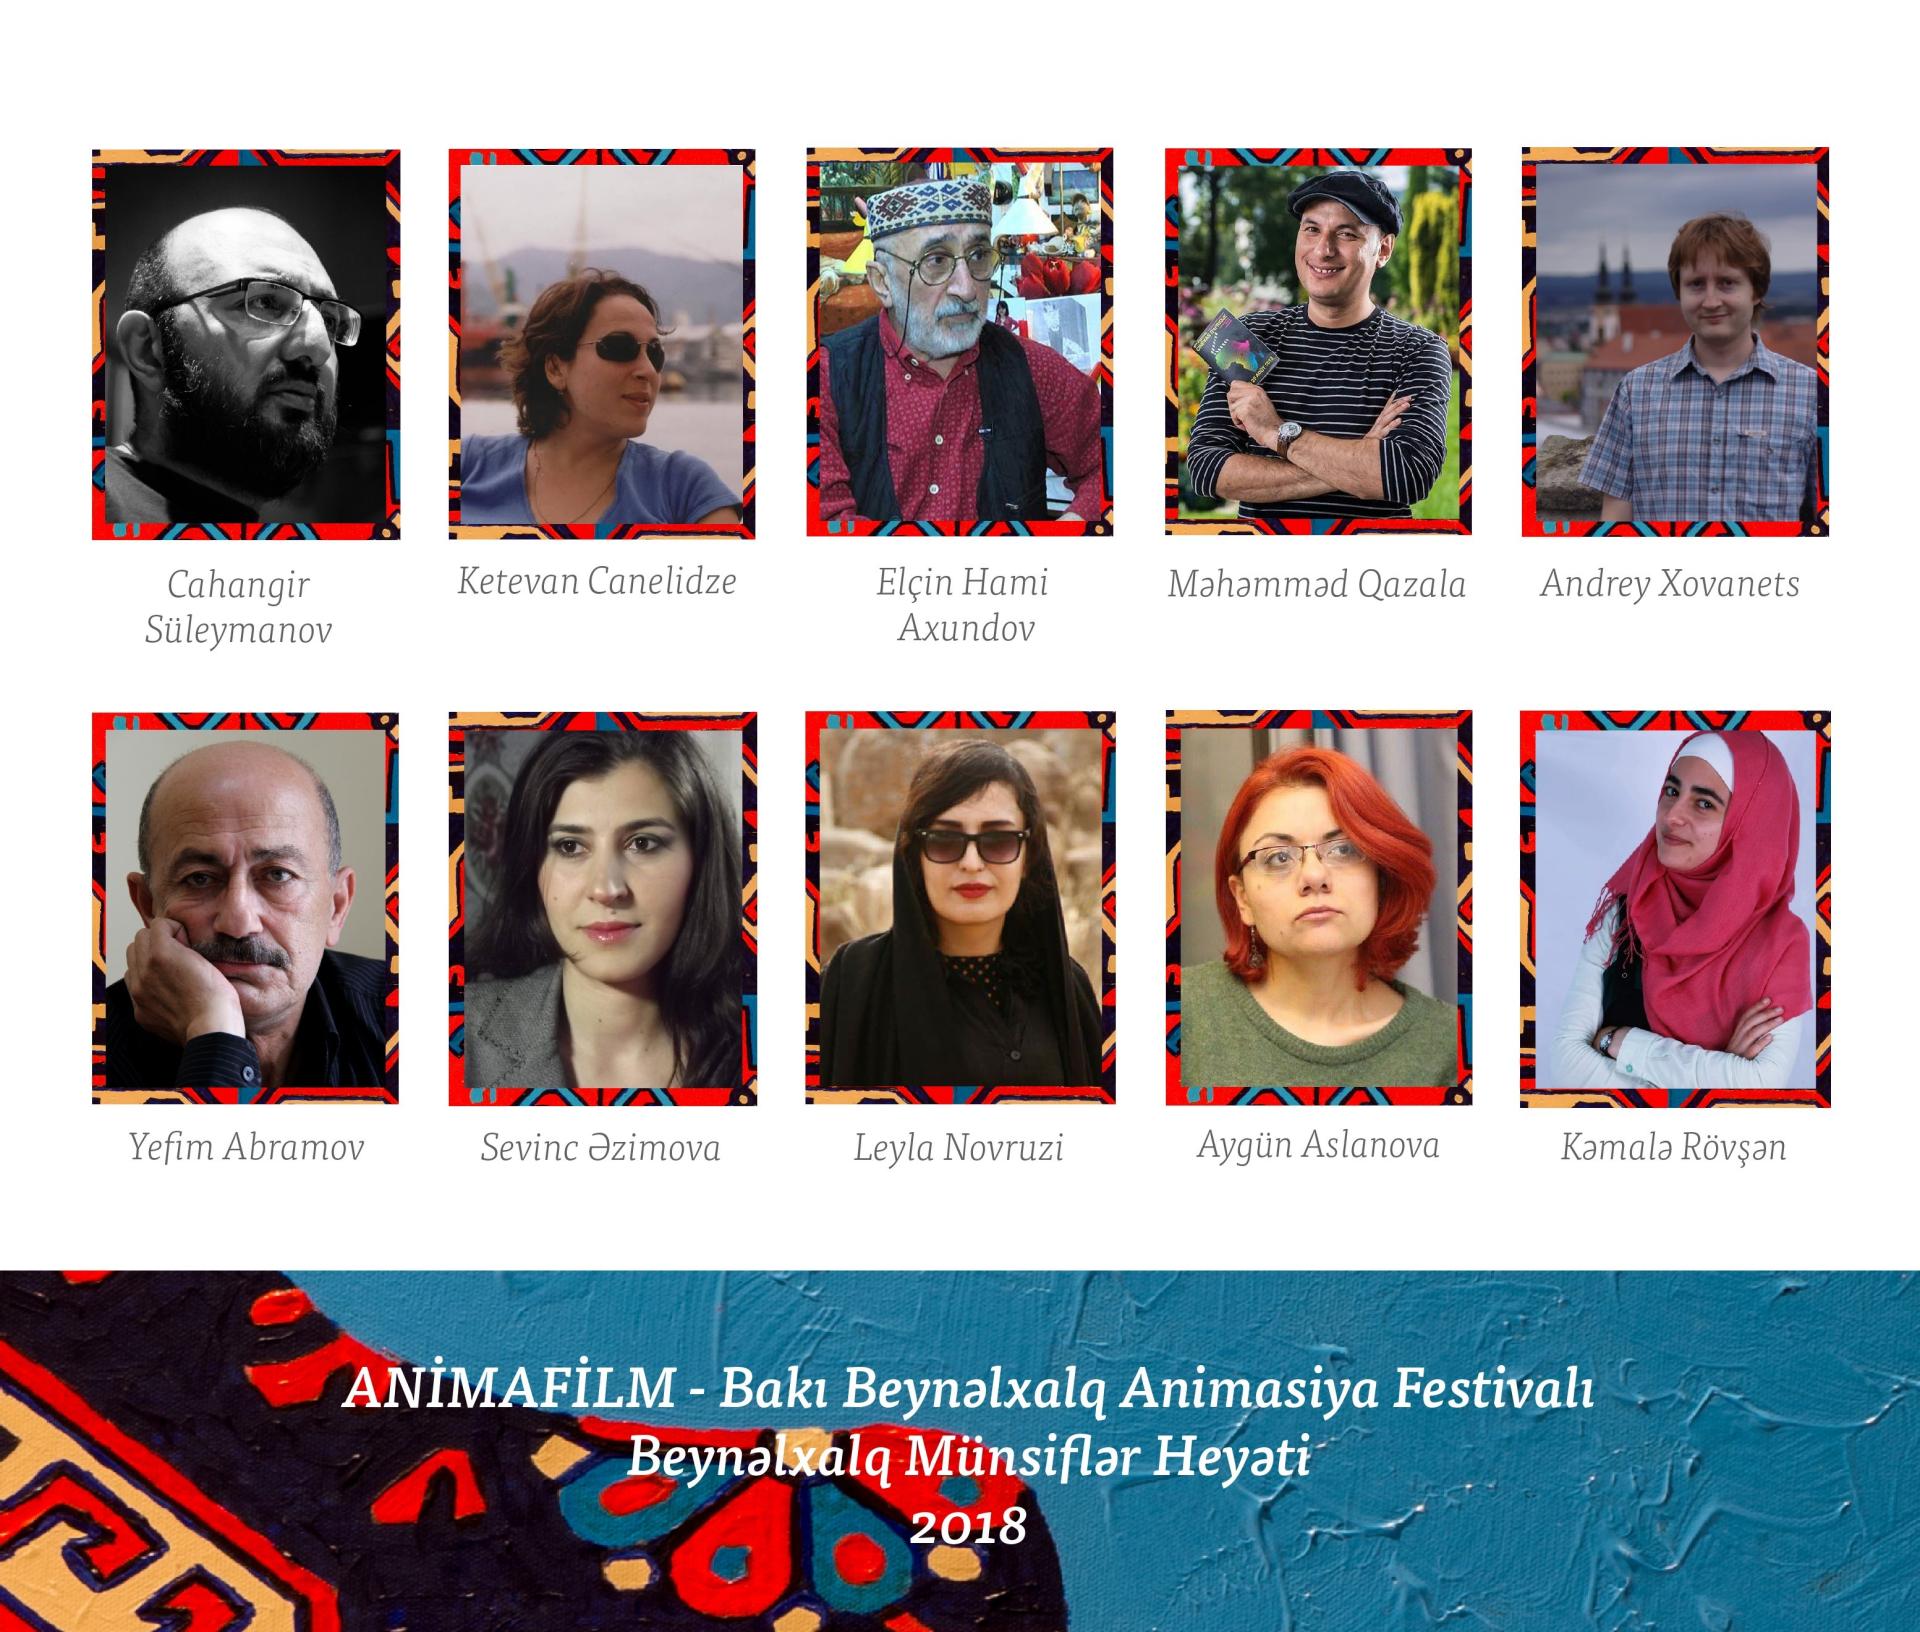 Bakı beynəlxalq animasiya festivalında münsiflər heyətinin tərkibi açıqlanıb (FOTO)